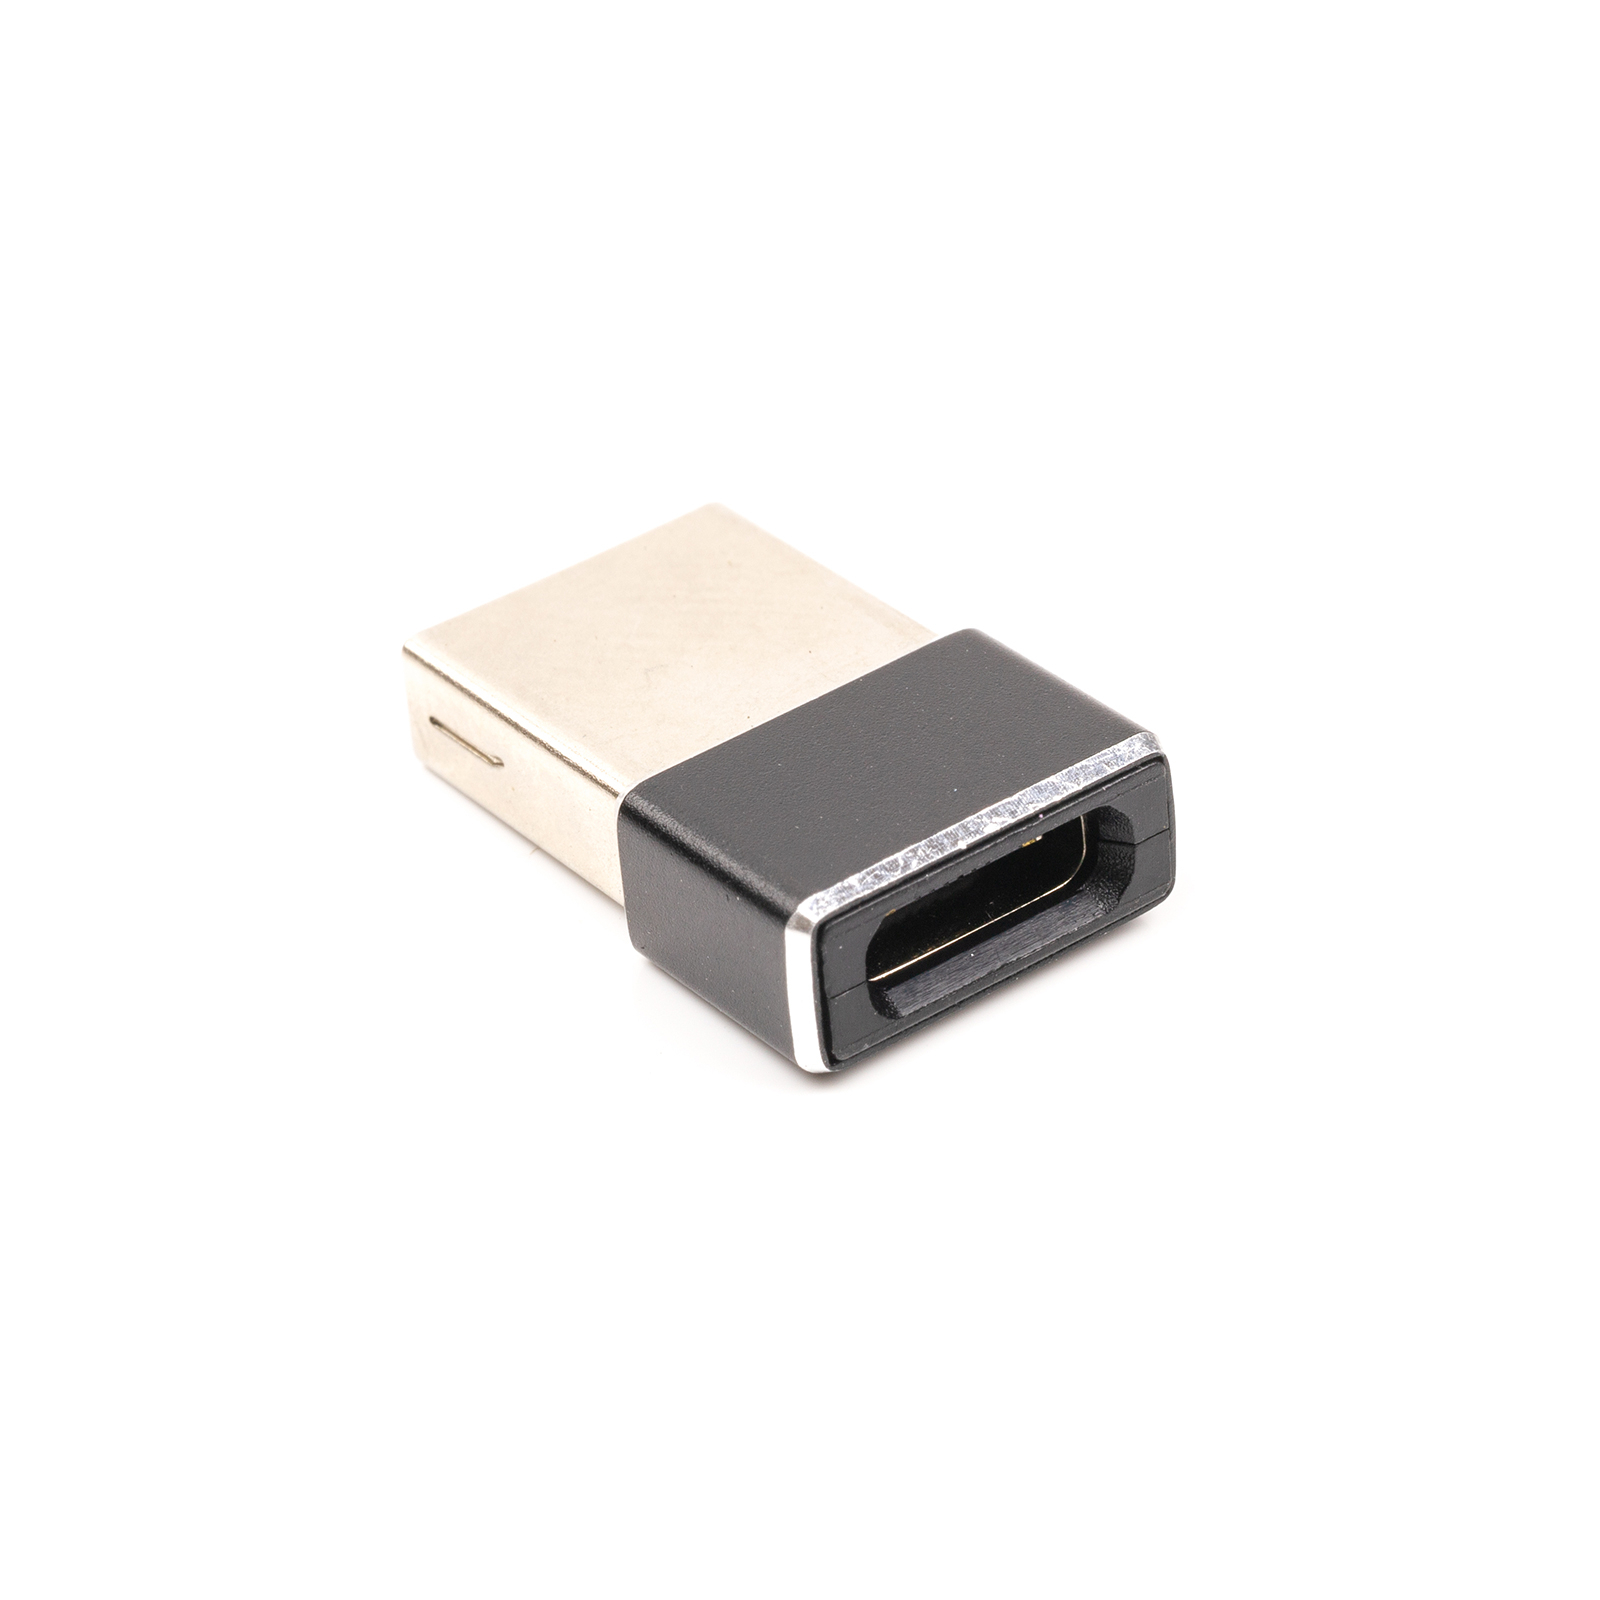 Перехідник USB Type-C (F) to USB 2.0 (M) PowerPlant (CA913107)